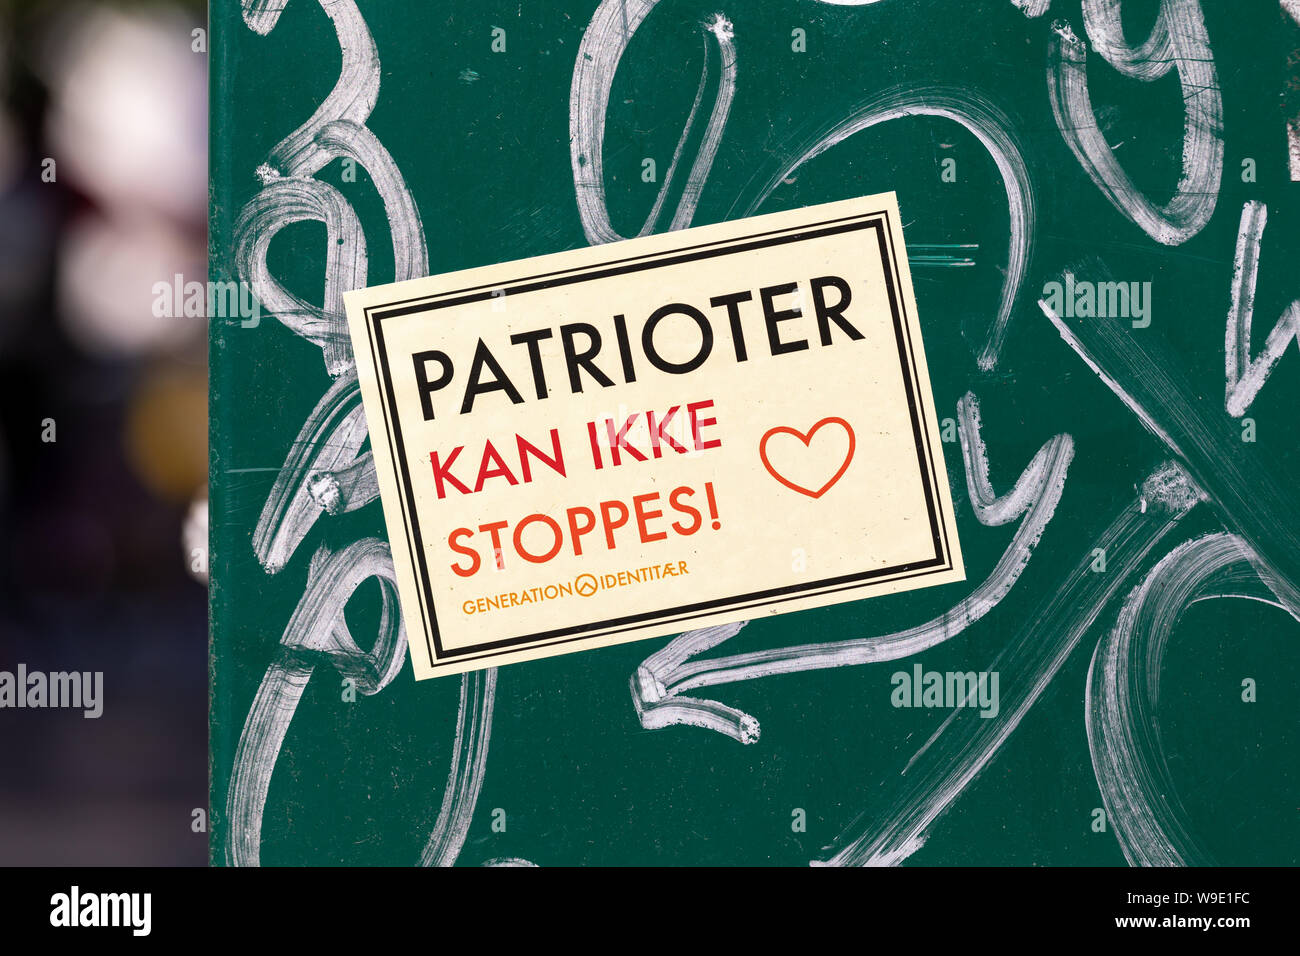 Dänische Generation Identität Aufkleber ('Generation Identitaer') 'Patrioter kan ikke stoppes' ('Patrioten nicht gestoppt werden') Stockfoto